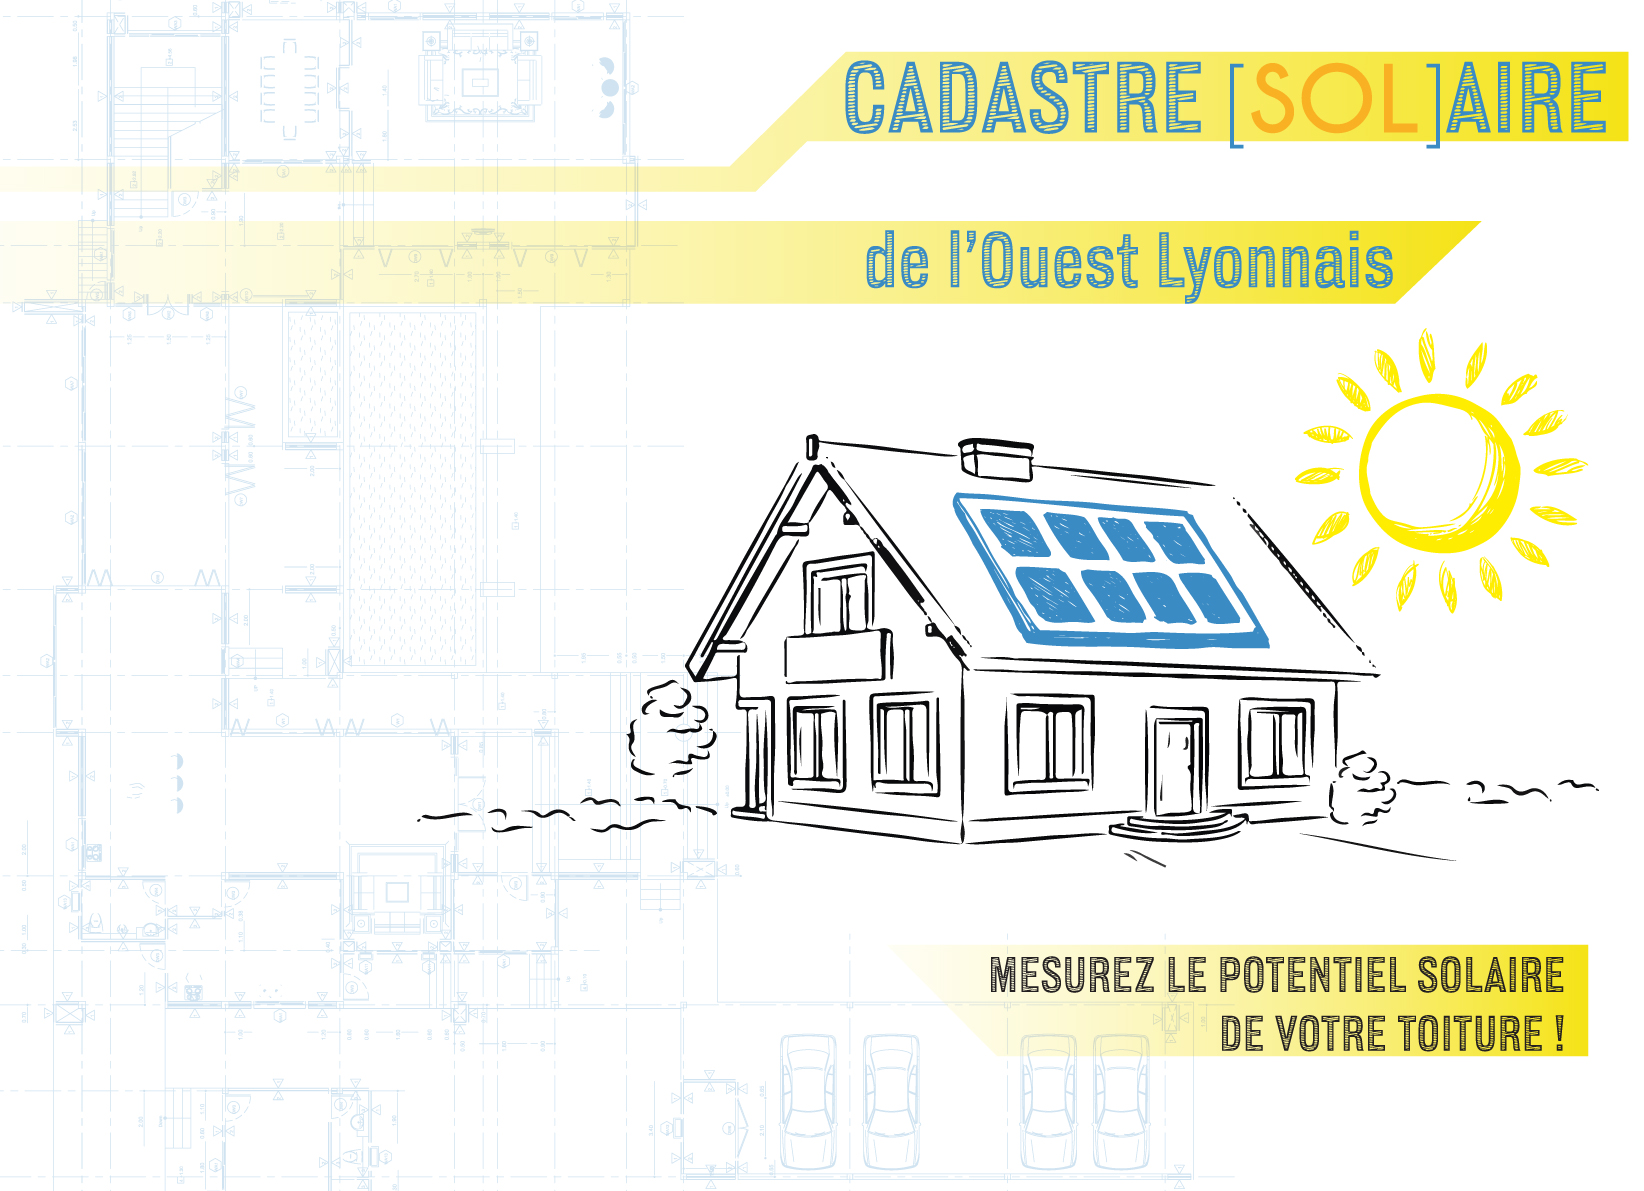 Cadastre solaire : un outil fiable et gratuit pour mesurer le potentiel solaire de votre toiture.